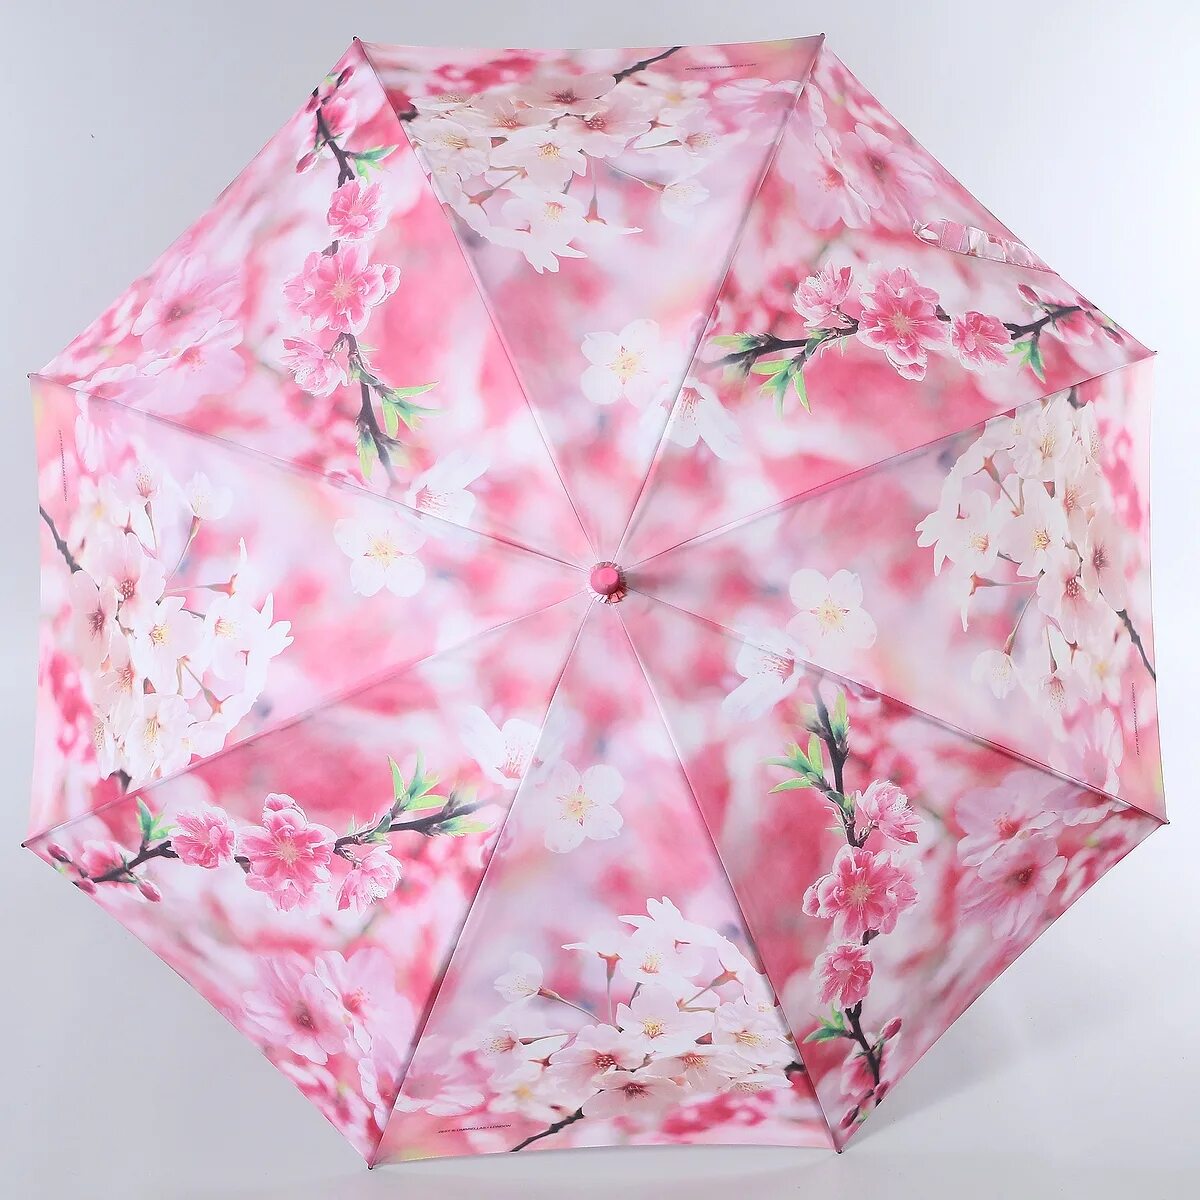 Купить зонт женский на озон. Зонт женский ЗЕСТ. Зонт ЗЕСТ Сакура розовая. Зонт Сакура автомат. Зонты Zest England.